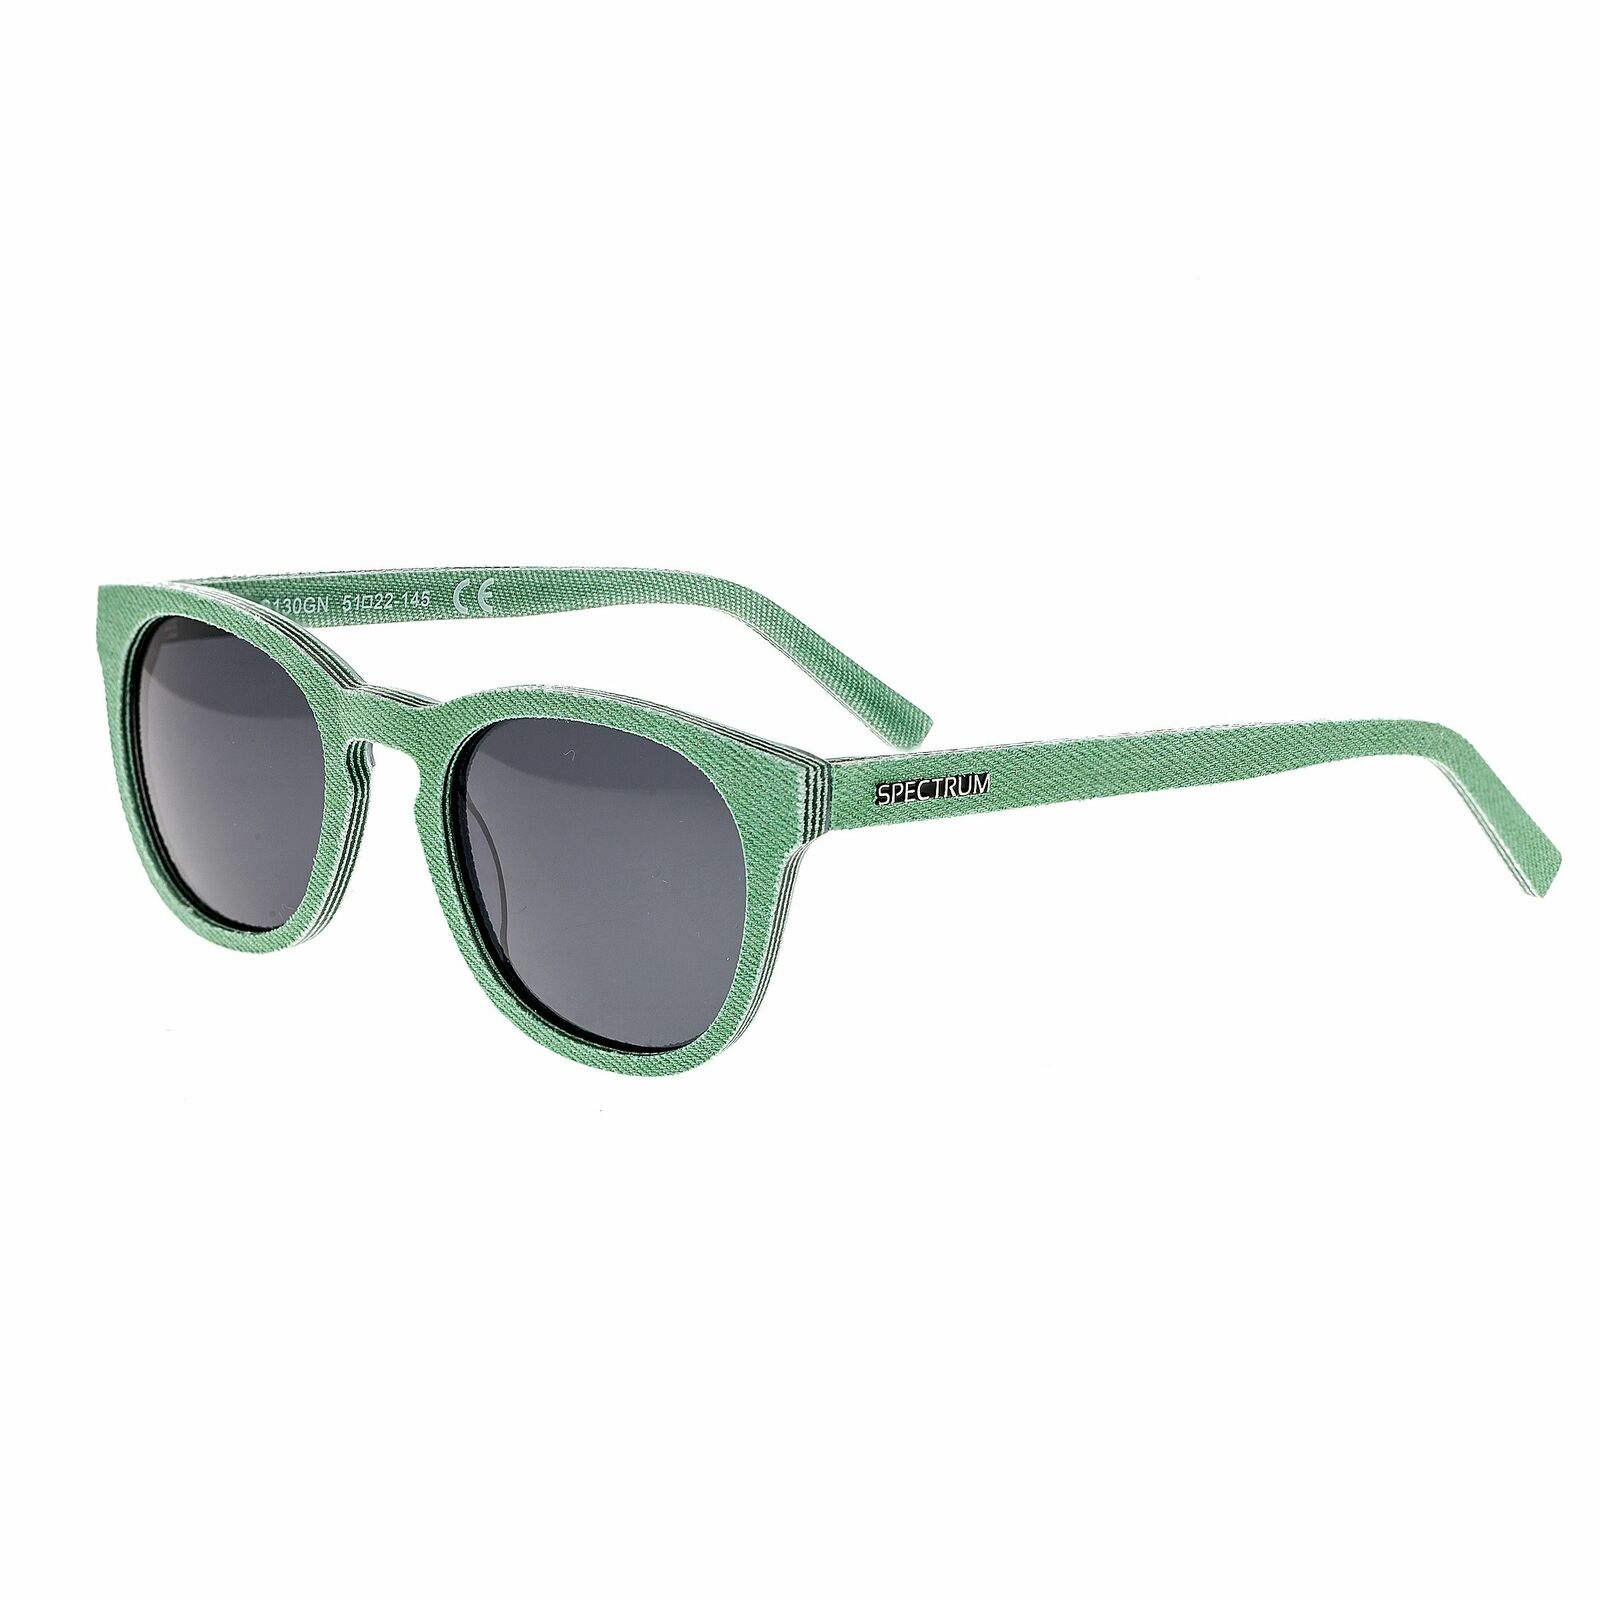 Spectrum Sunglasses North Shore Polarized Denim Sunglasses, Green / : Ssgs130gn